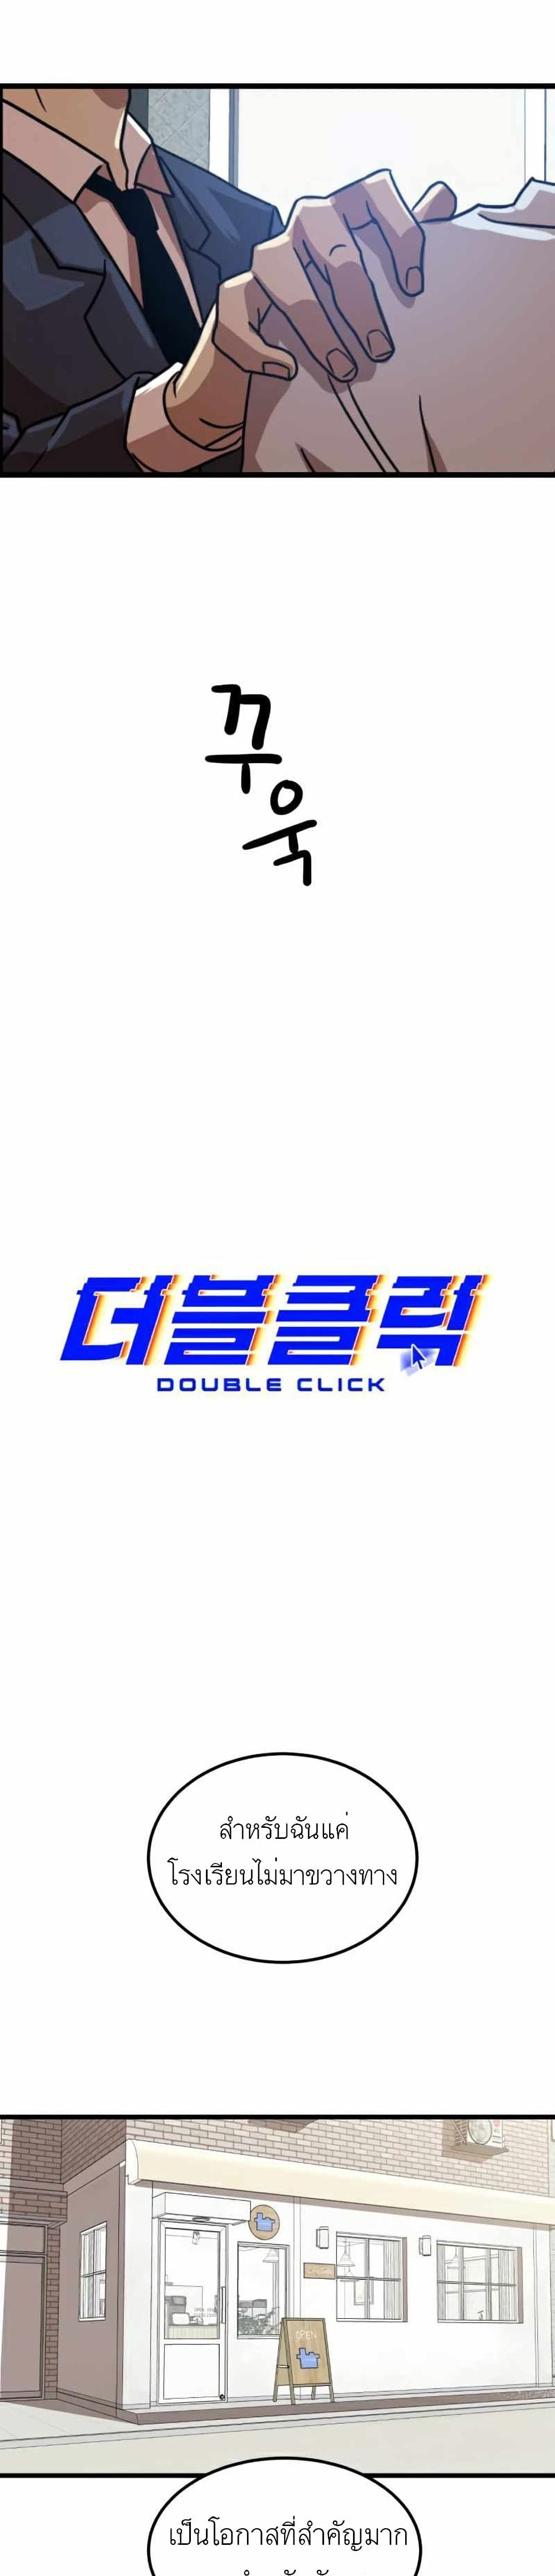 Double Click ตอนที่ 38 (10)